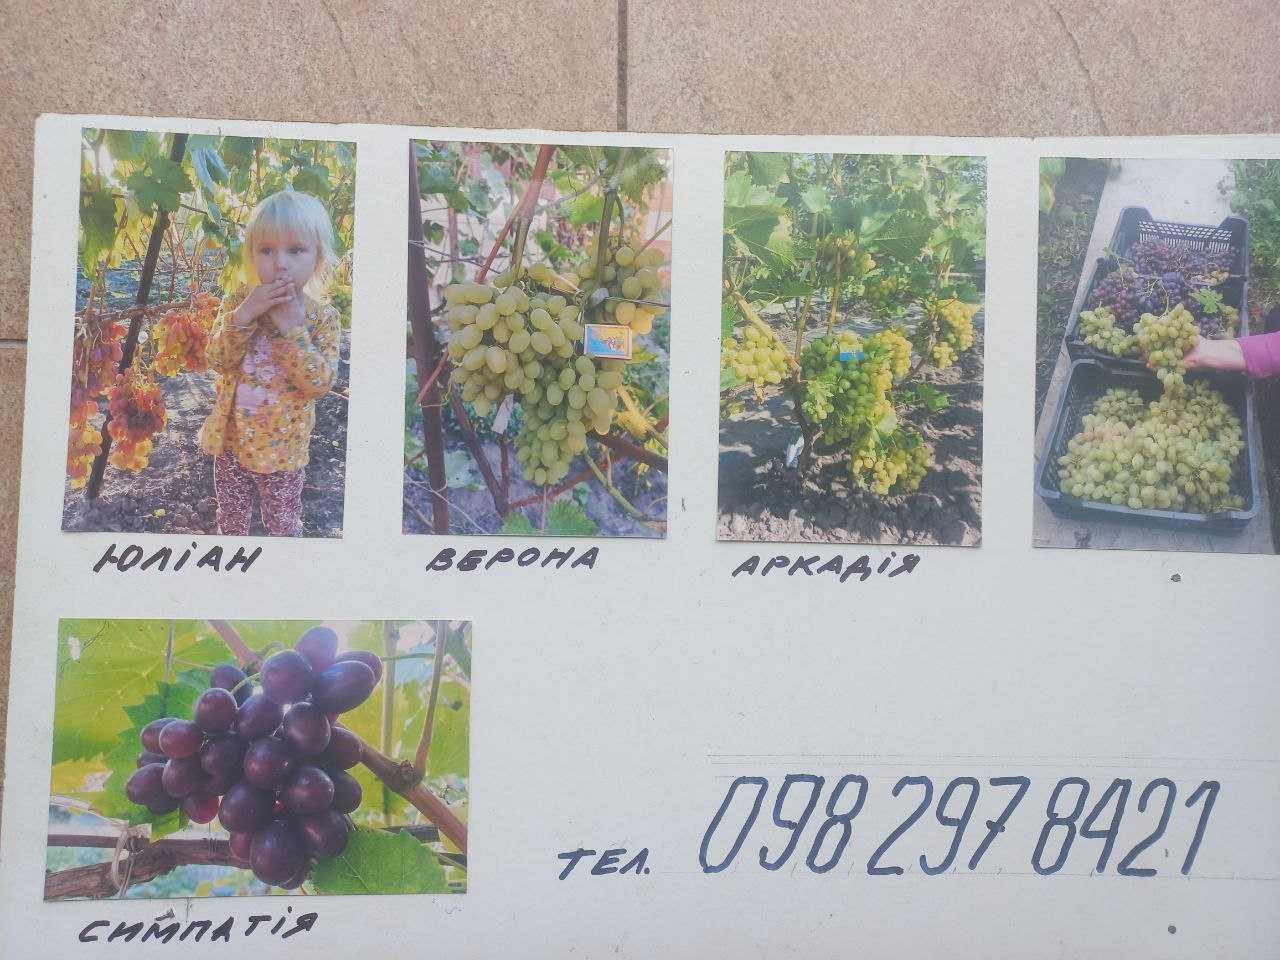 Продам саджанці винограду